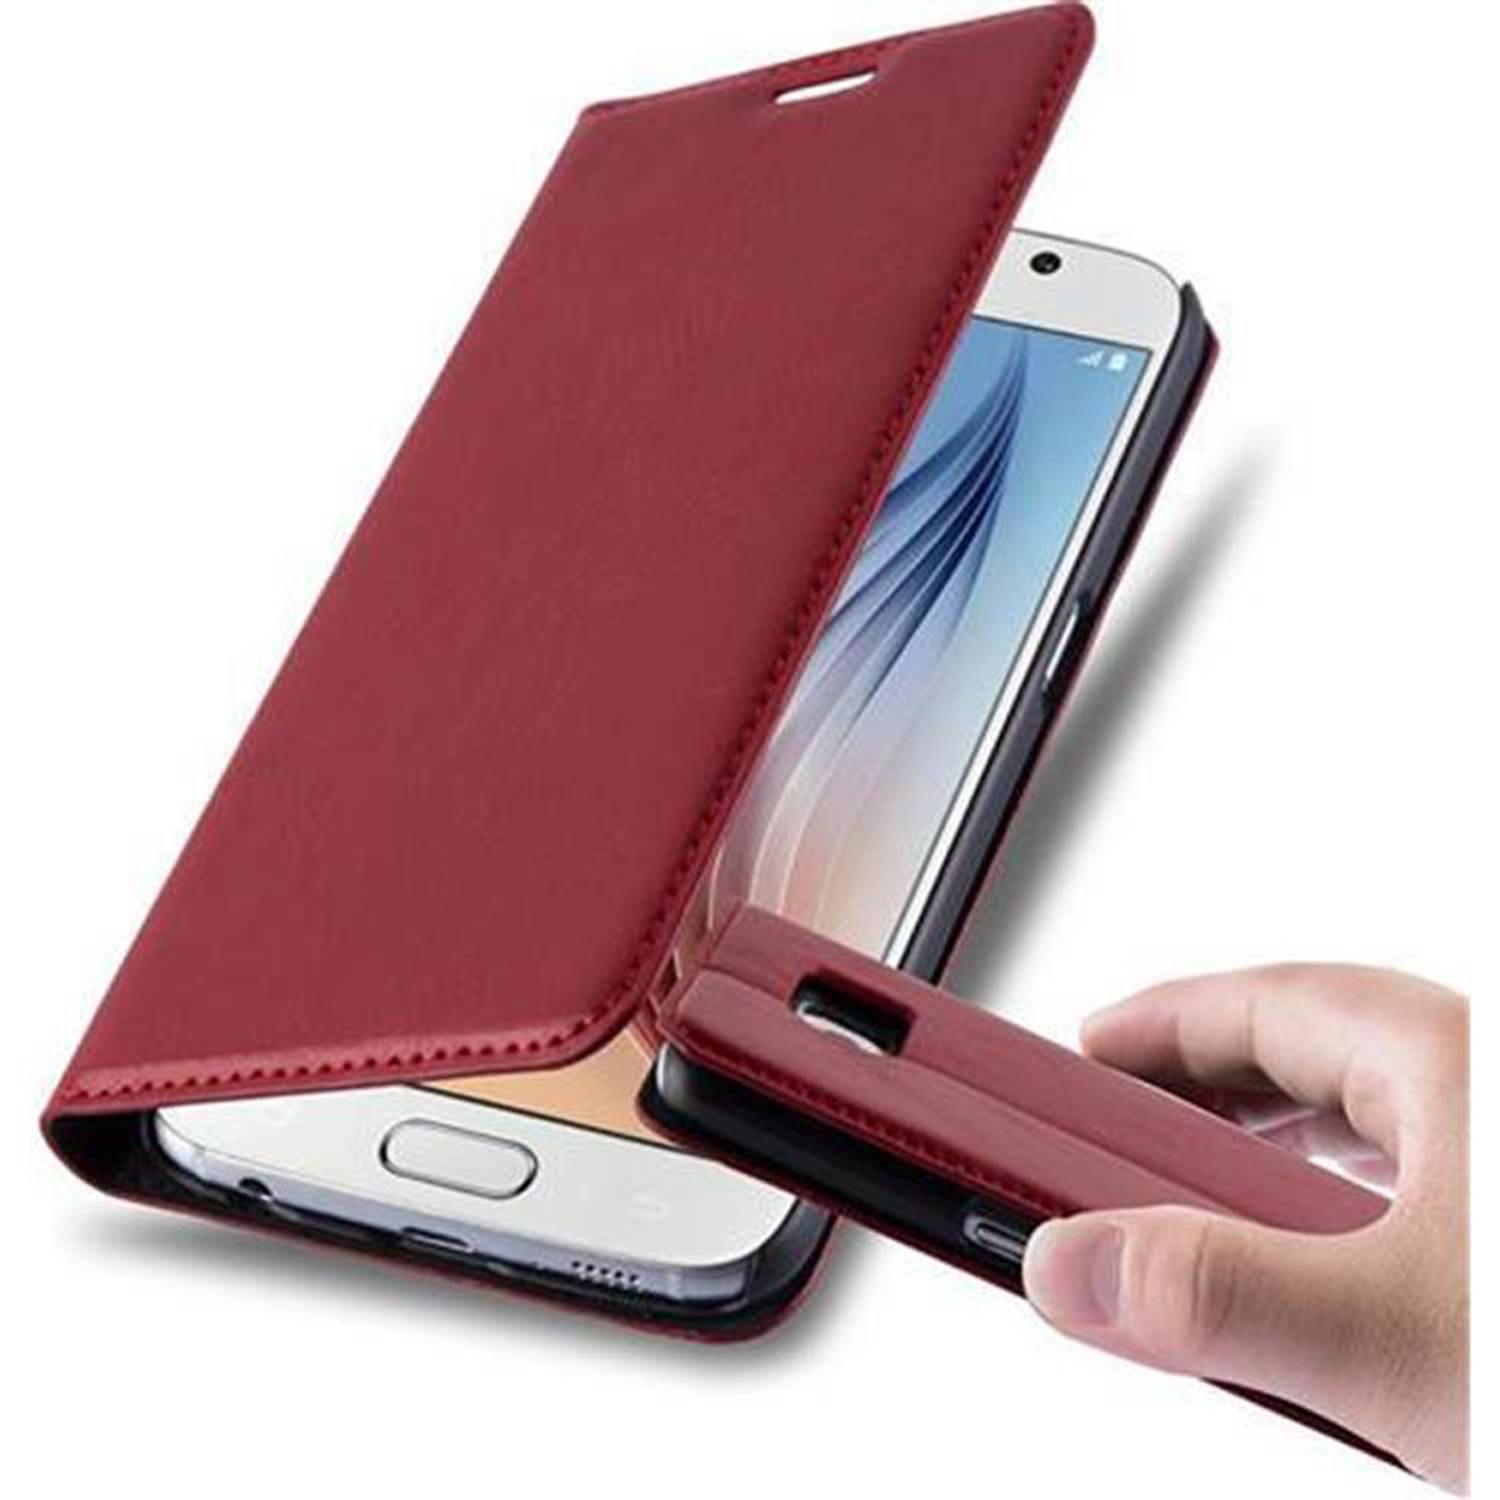 Cadorabo Hoesje voor Samsung Galaxy S6 in APPEL ROOD - Beschermend etui met magnetische sluiting